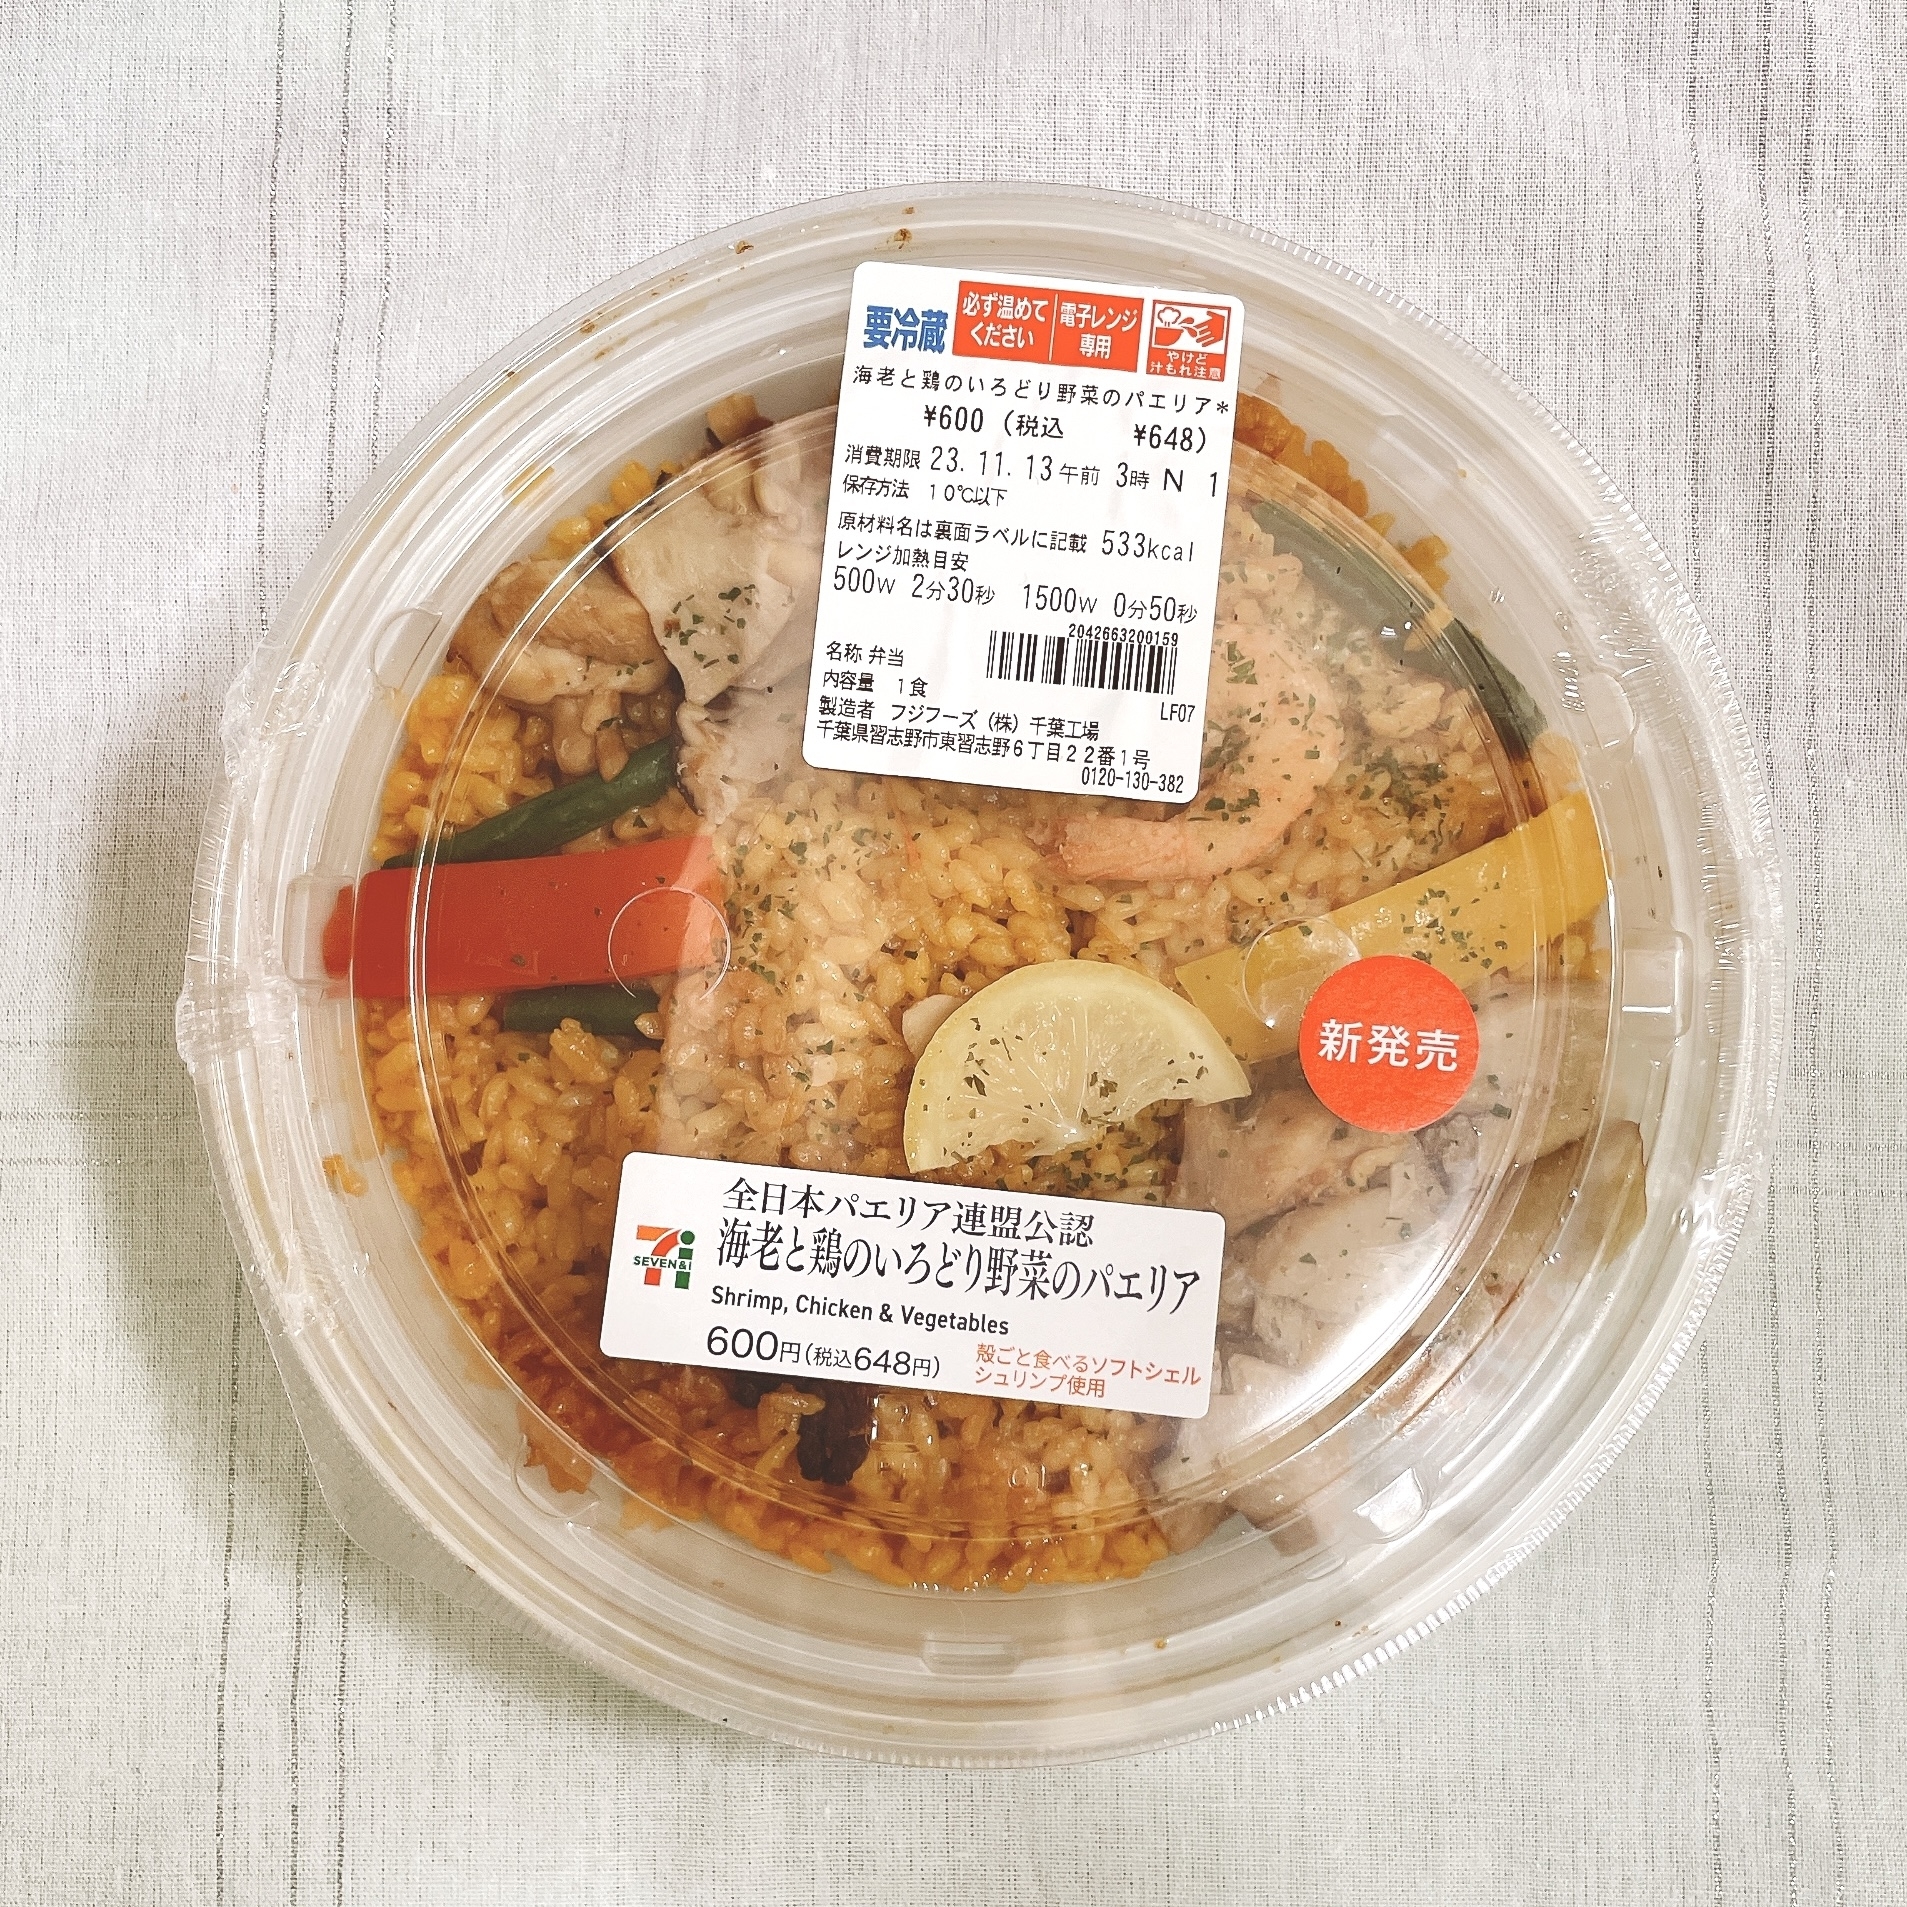 セブン-イレブンのオススメグルメ「全日本パエリア連盟公認 海老と鶏のいろどり野菜のパエリア」